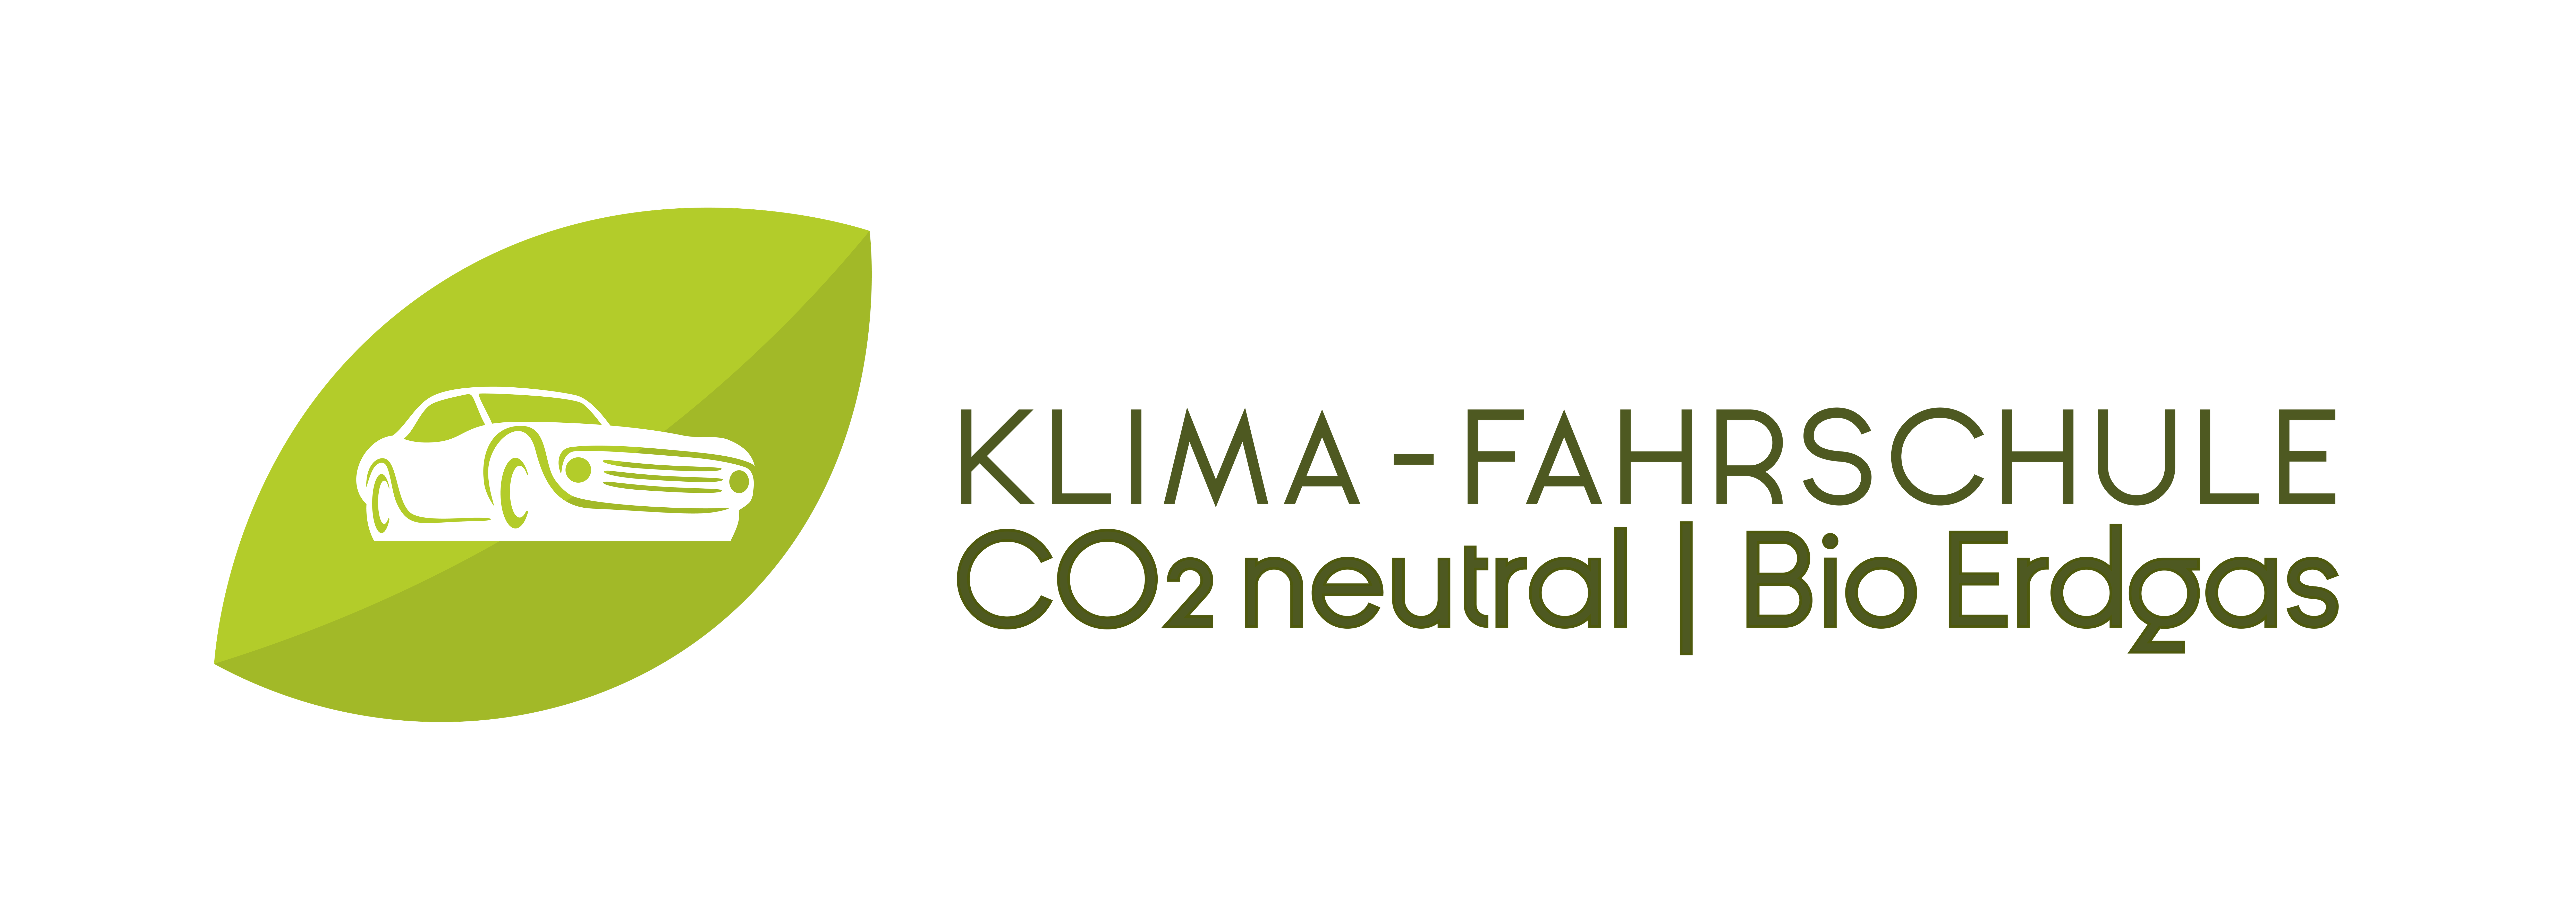 Logo Klimafahrschule